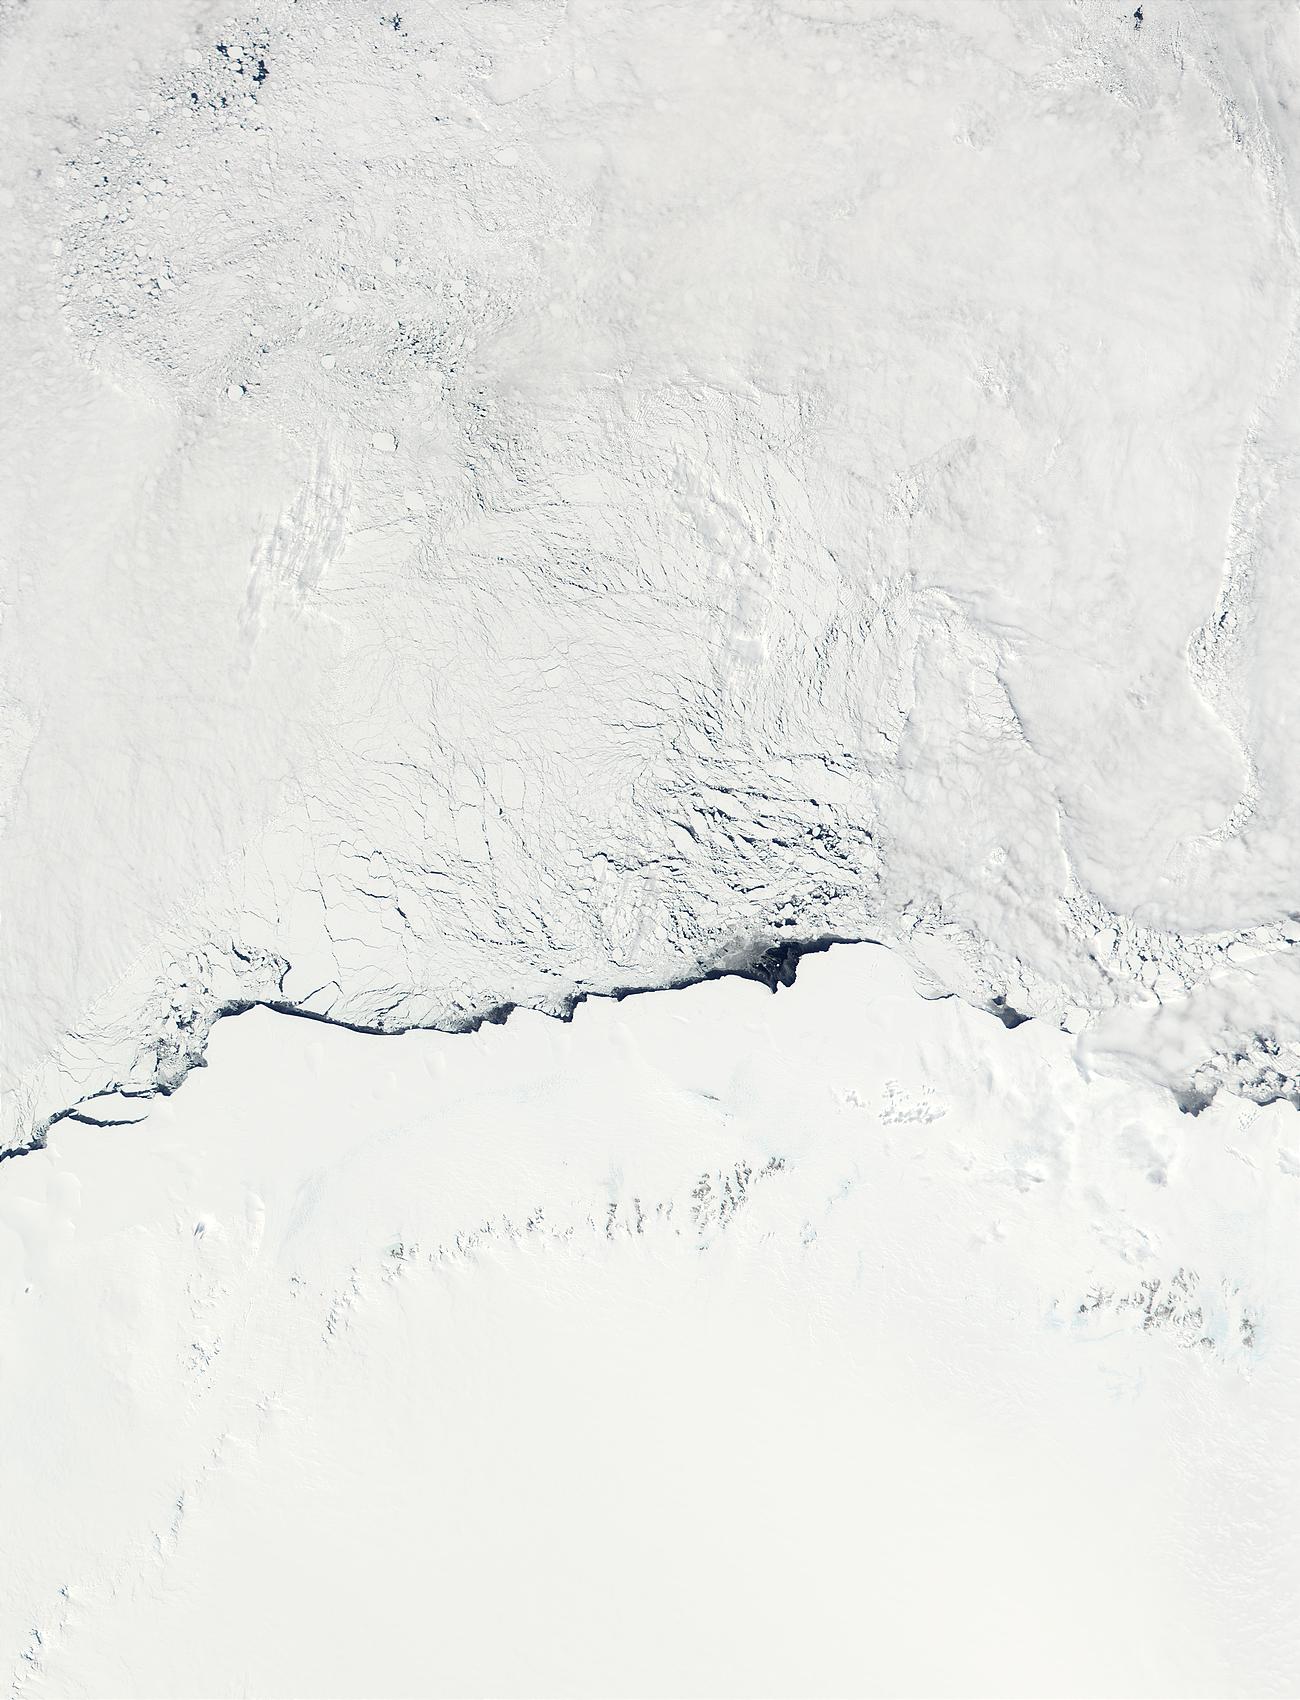 Martha Coast, Princess Astrid Coast, and Princess Ragnhild Coast, Antarctica - related image preview